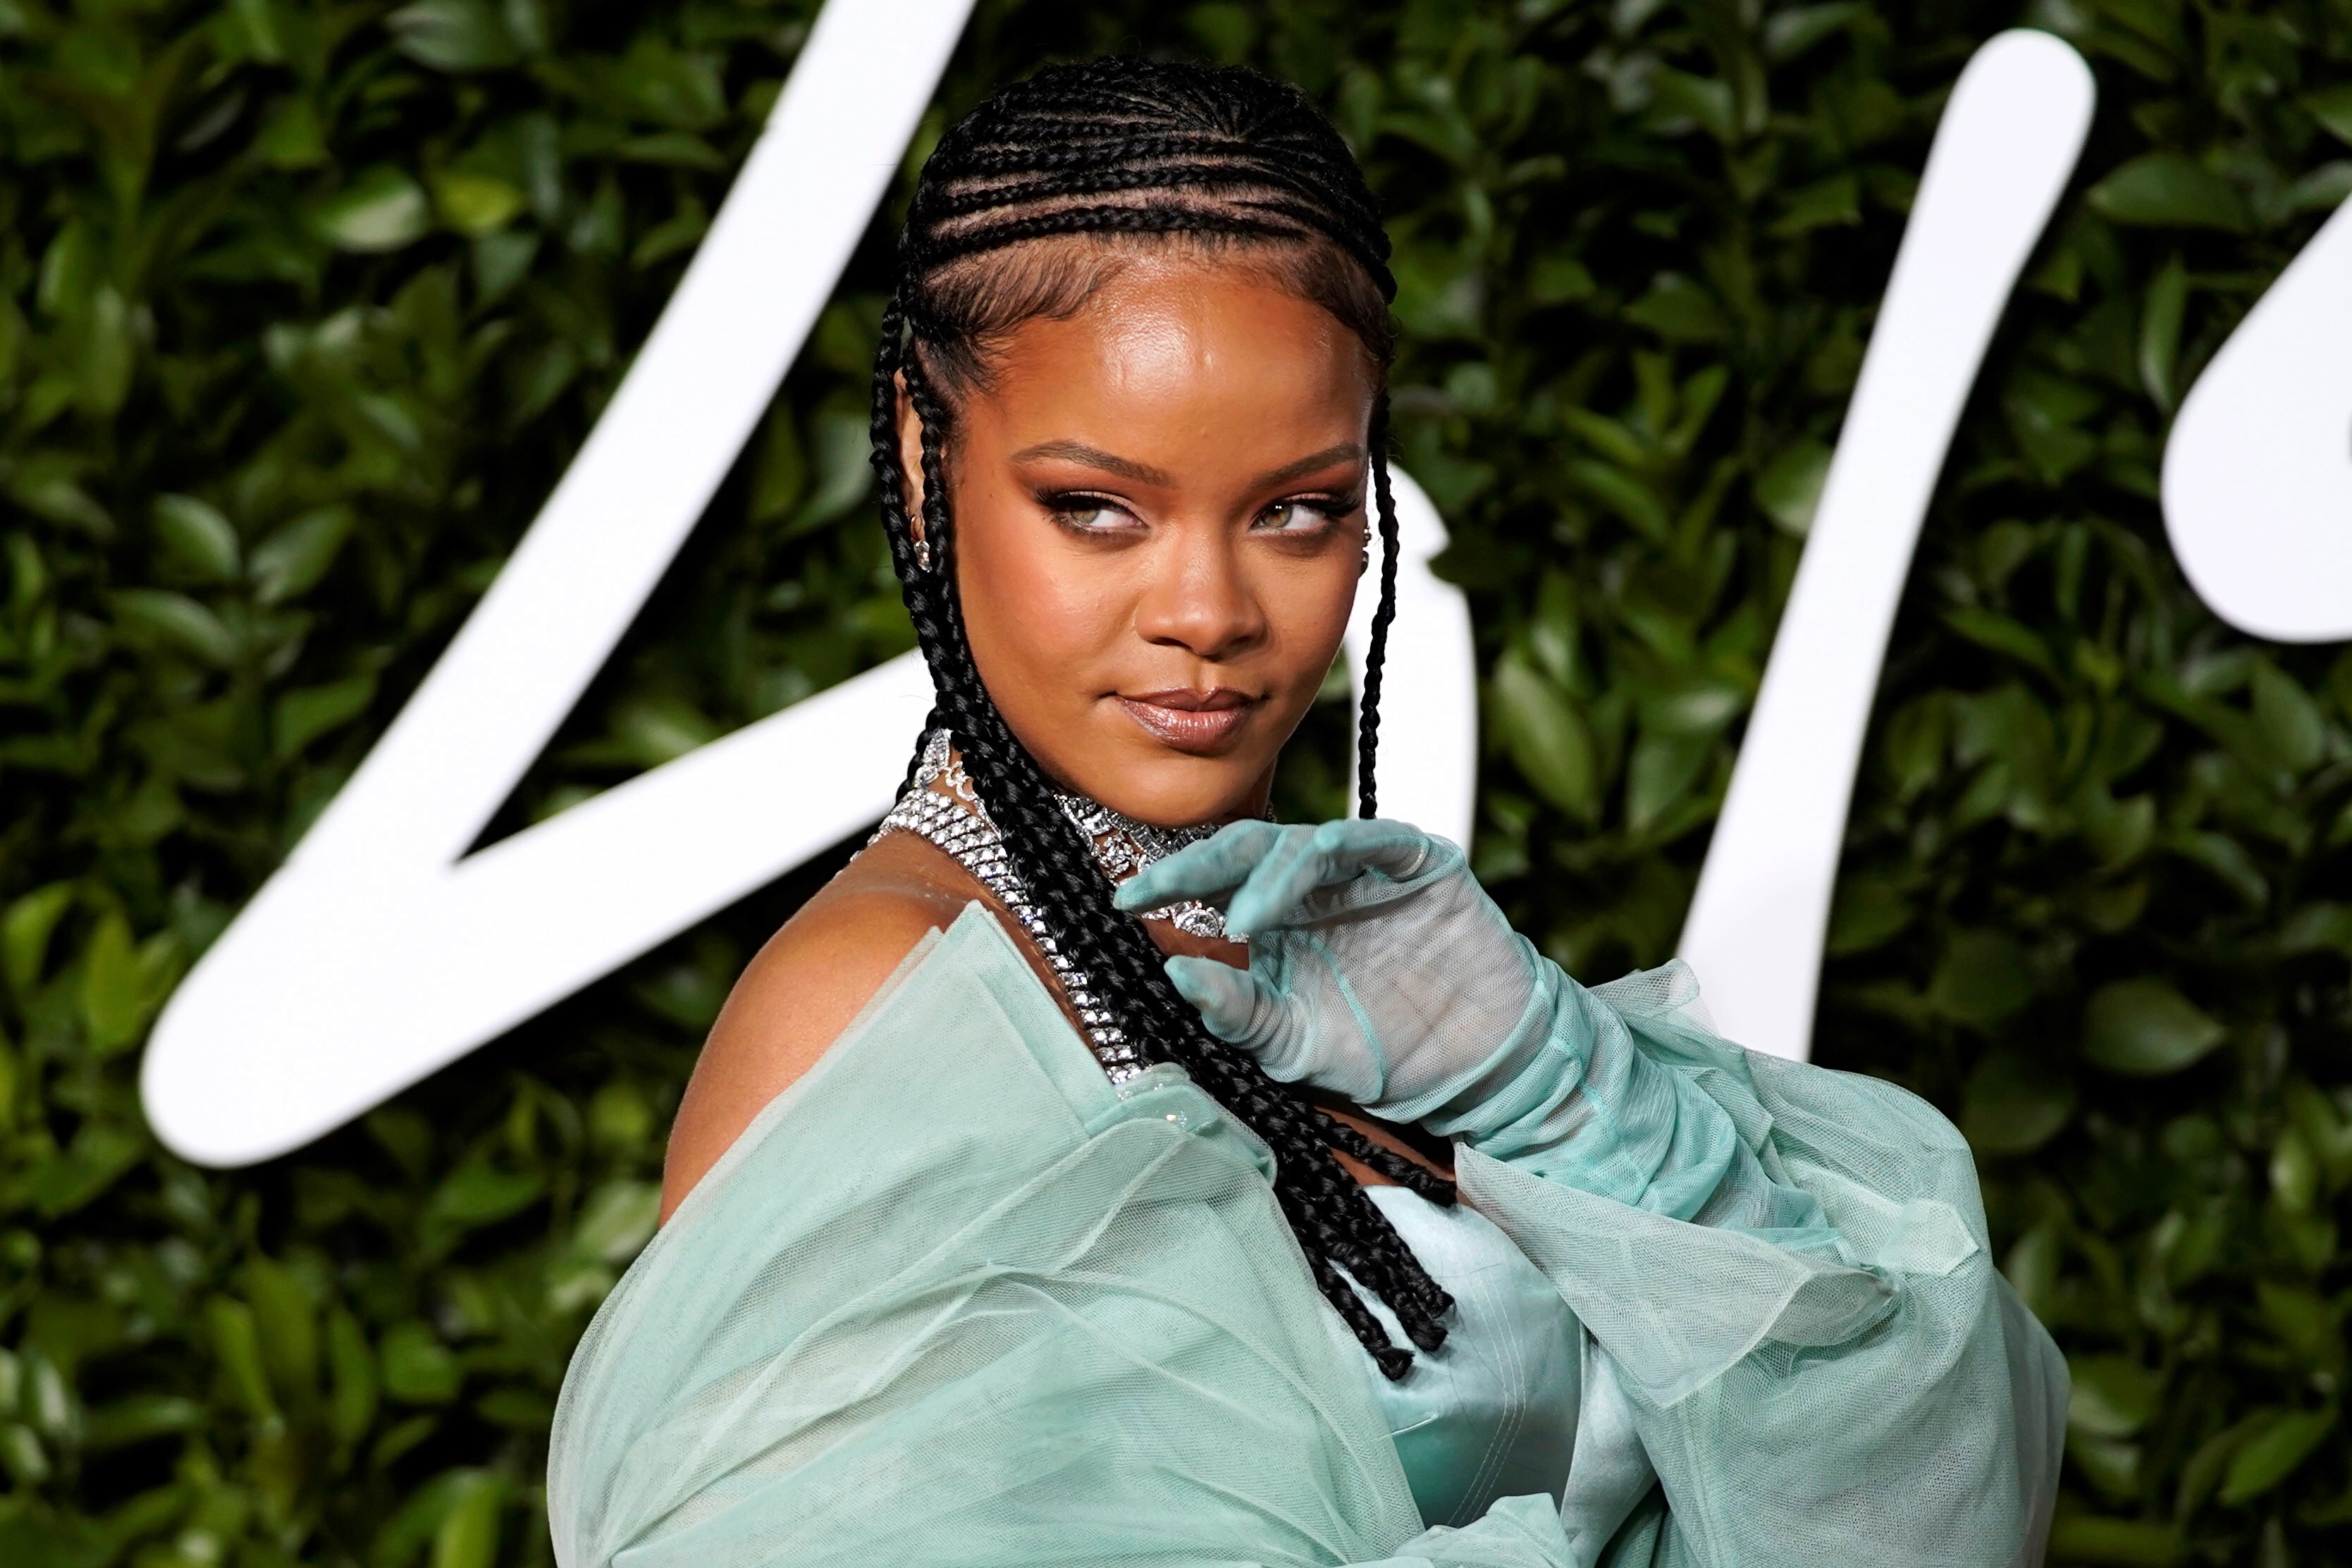 Rihanna actuará en el show de medio tiempo del Super Bowl 2023